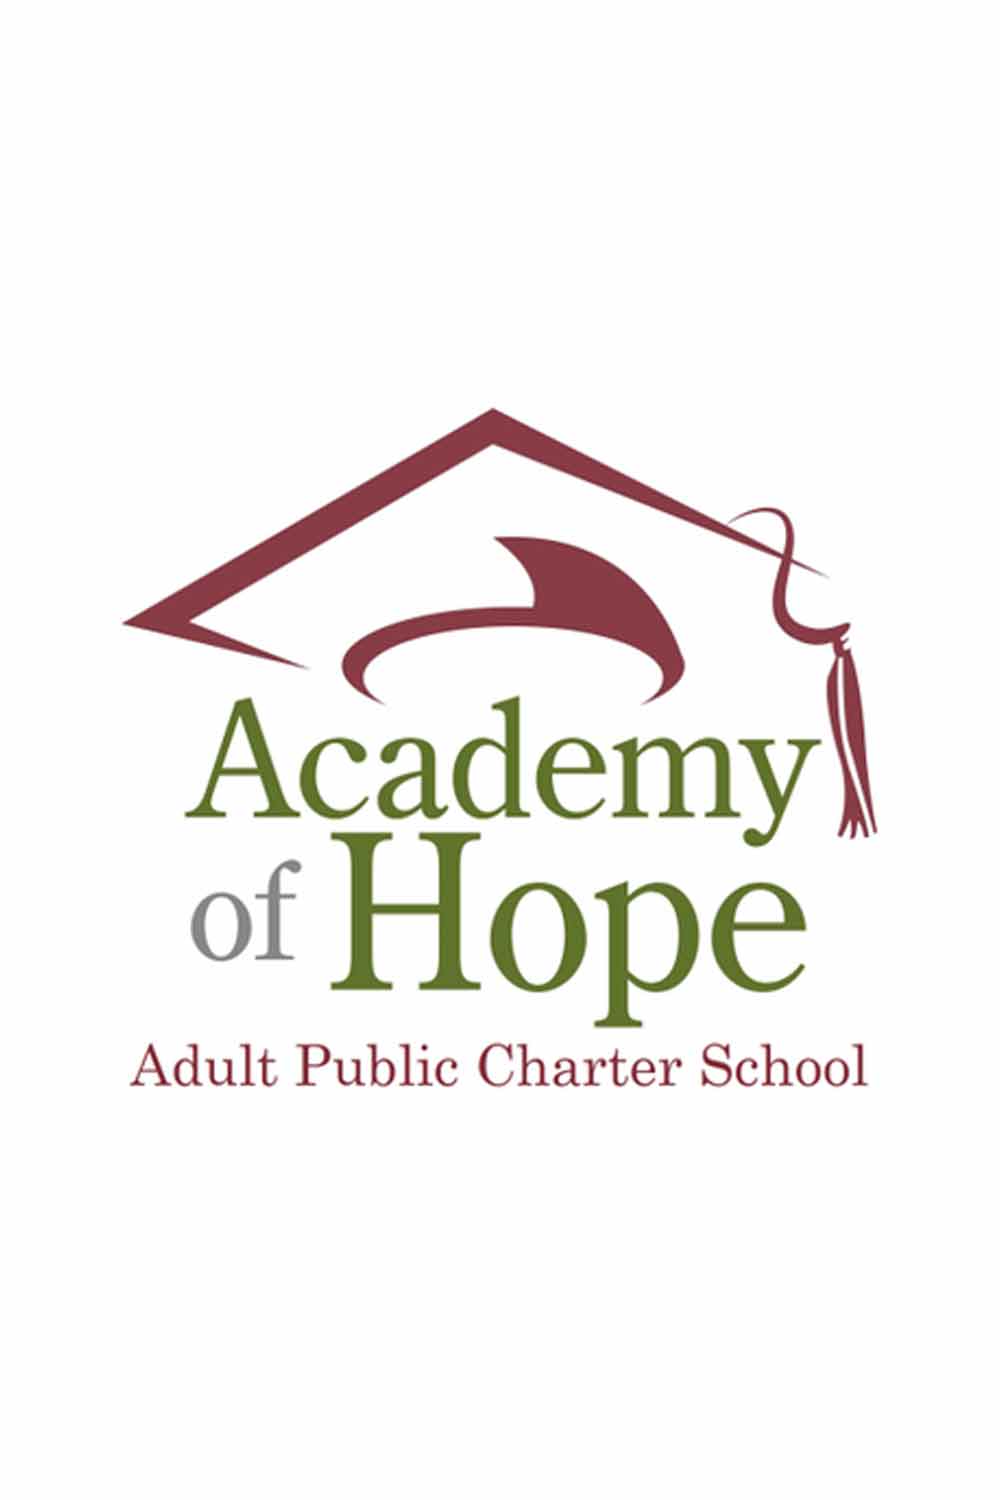 Academy of Hope Staff